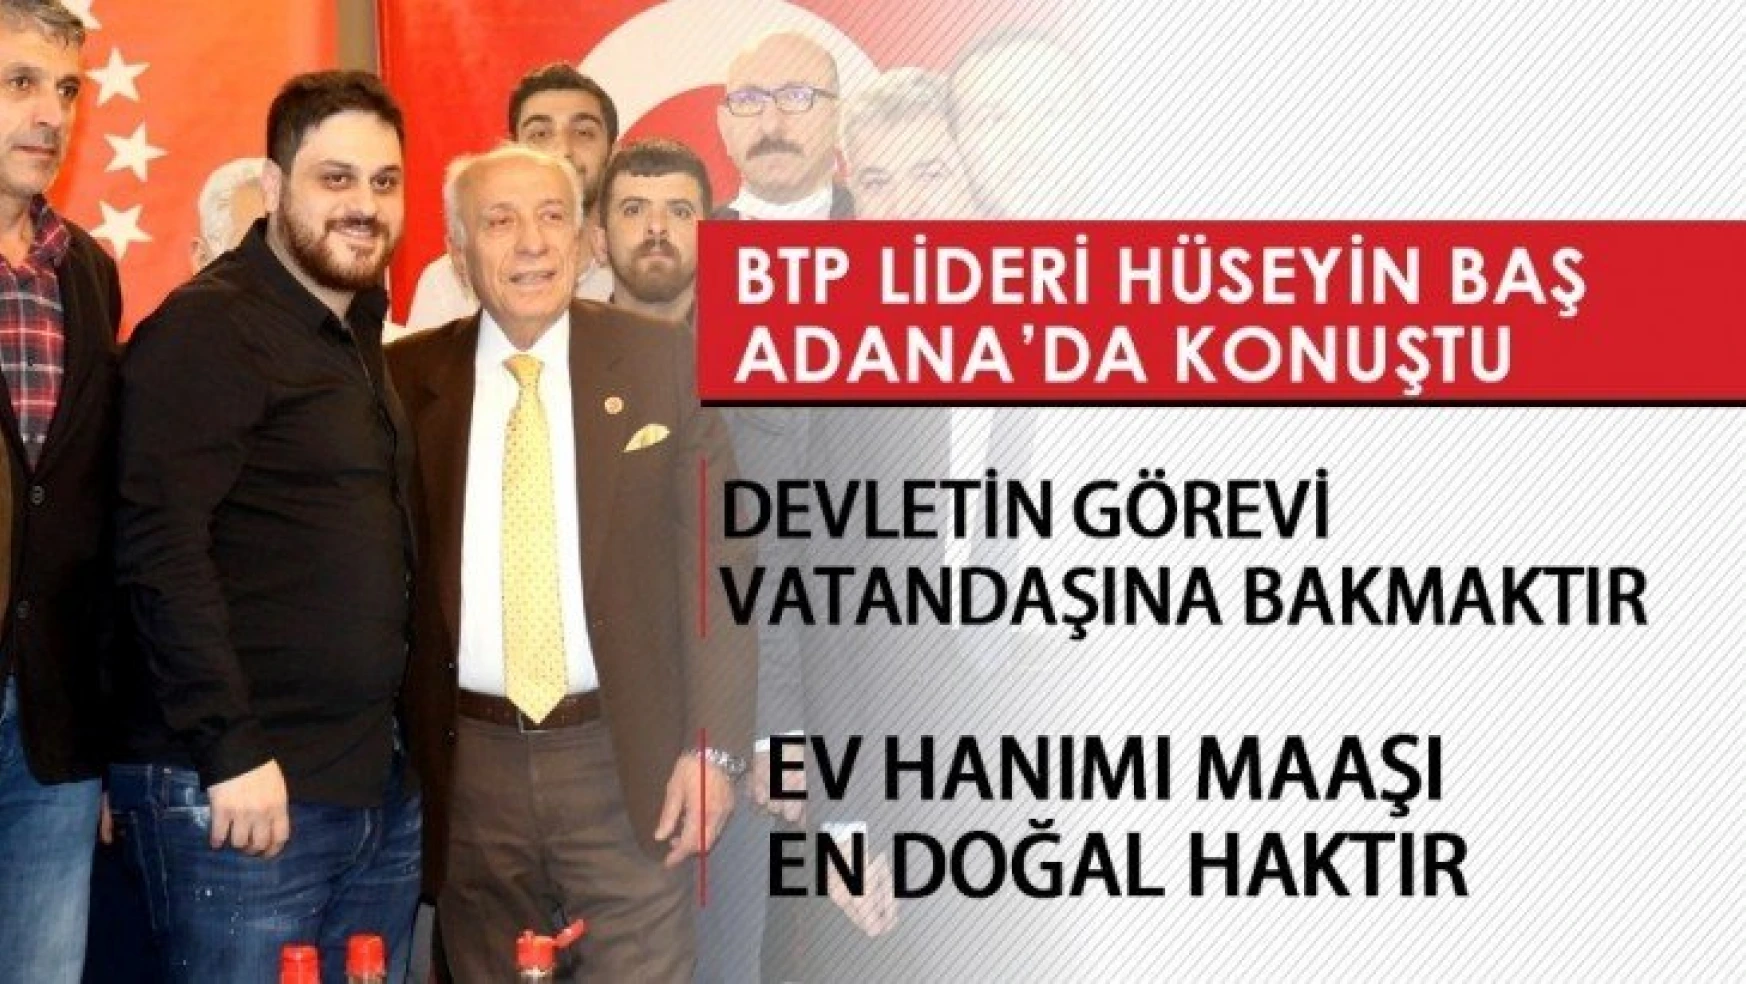 BTP Lideri Baş Adana'da